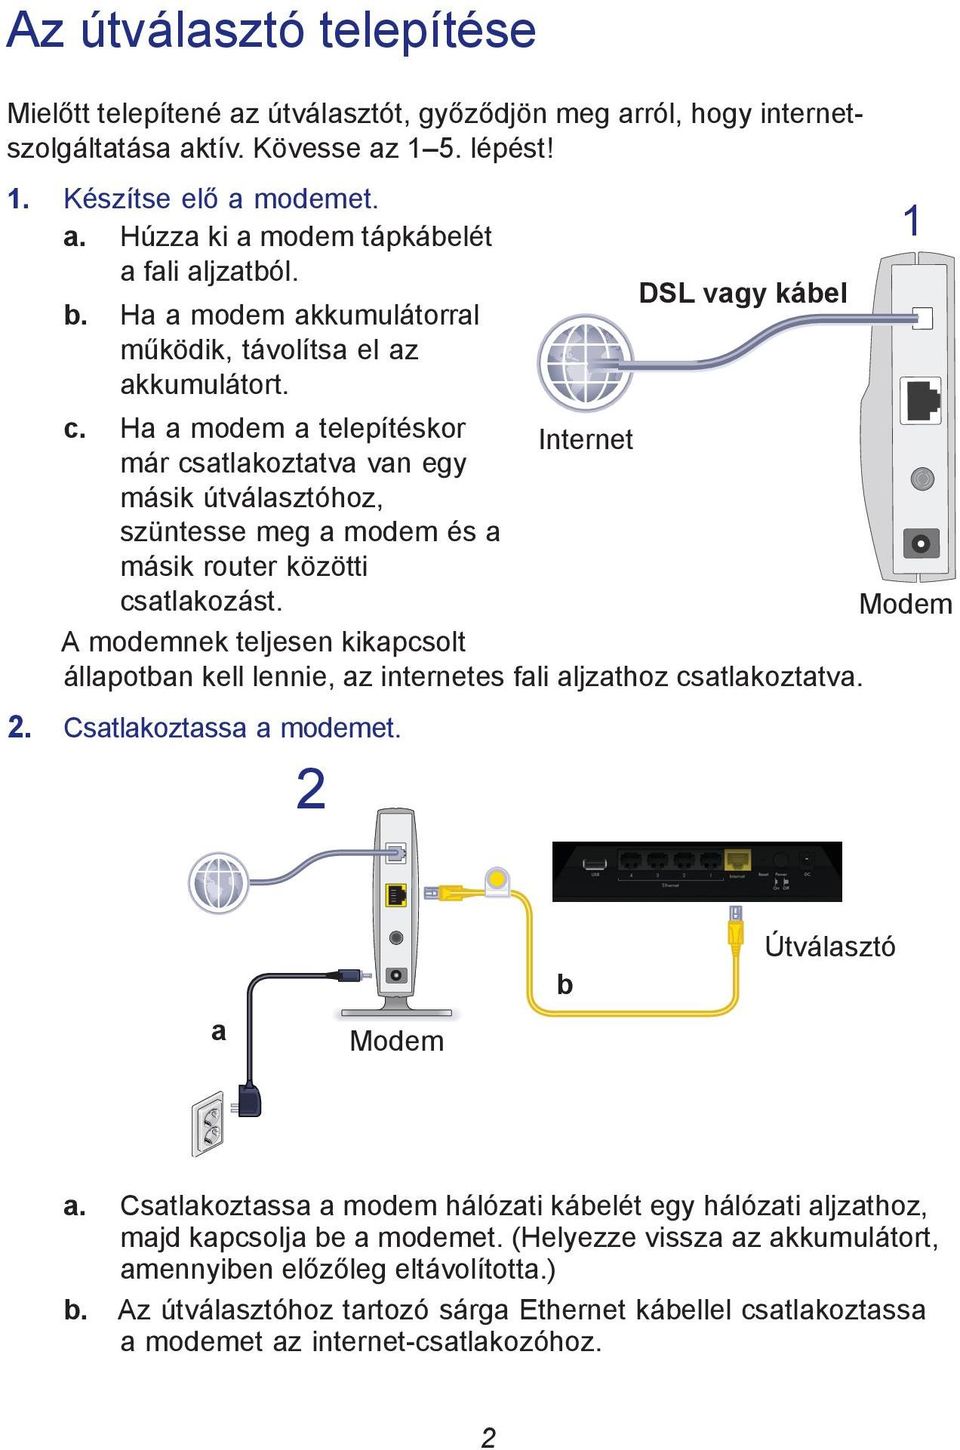 Ha a modem a telepítéskor Internet már csatlakoztatva van egy másik útválasztóhoz, szüntesse meg a modem és a másik router közötti csatlakozást.